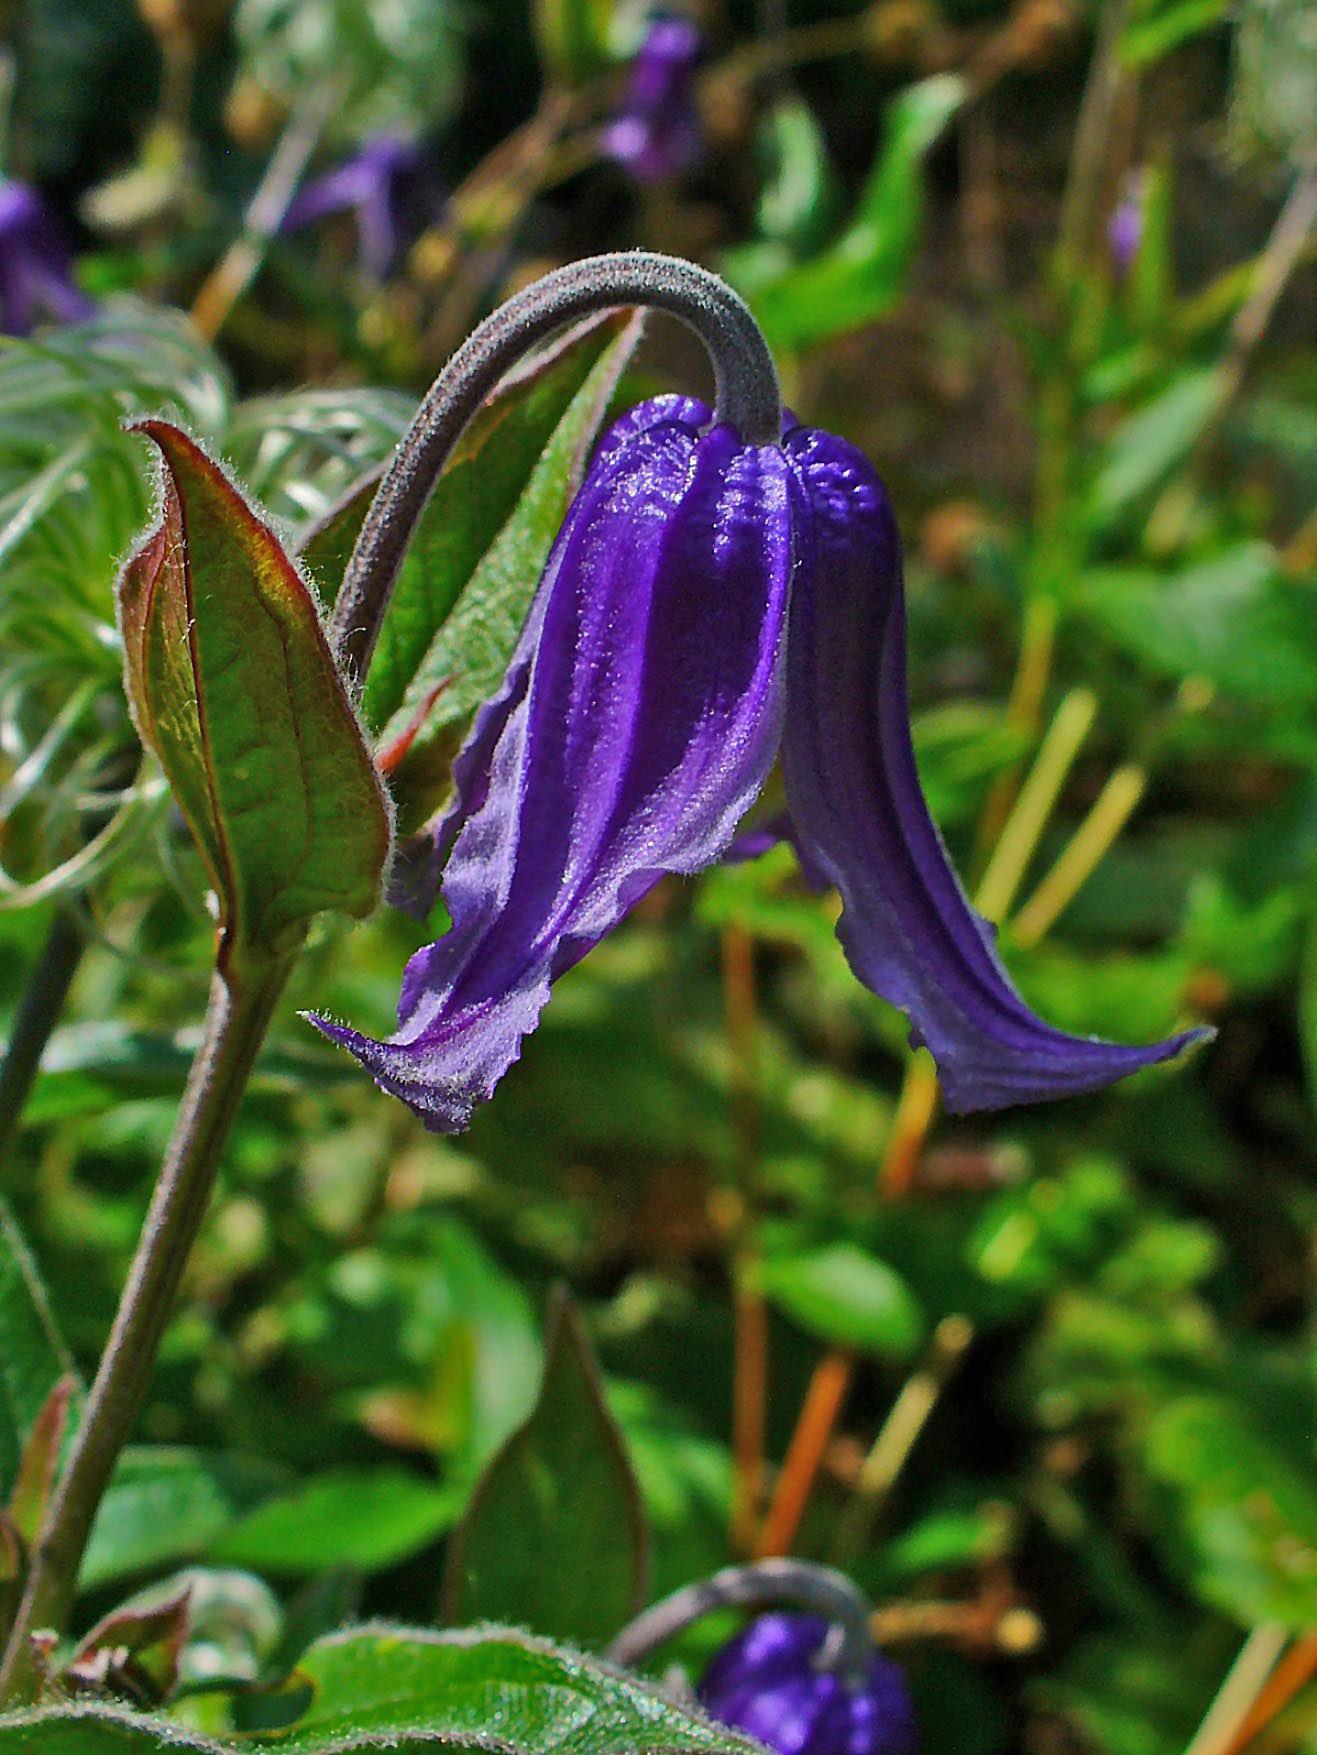 Blue-violet flower dark-brown stems green-maroon leaves, white hair, maroon midrib, veins and blades.